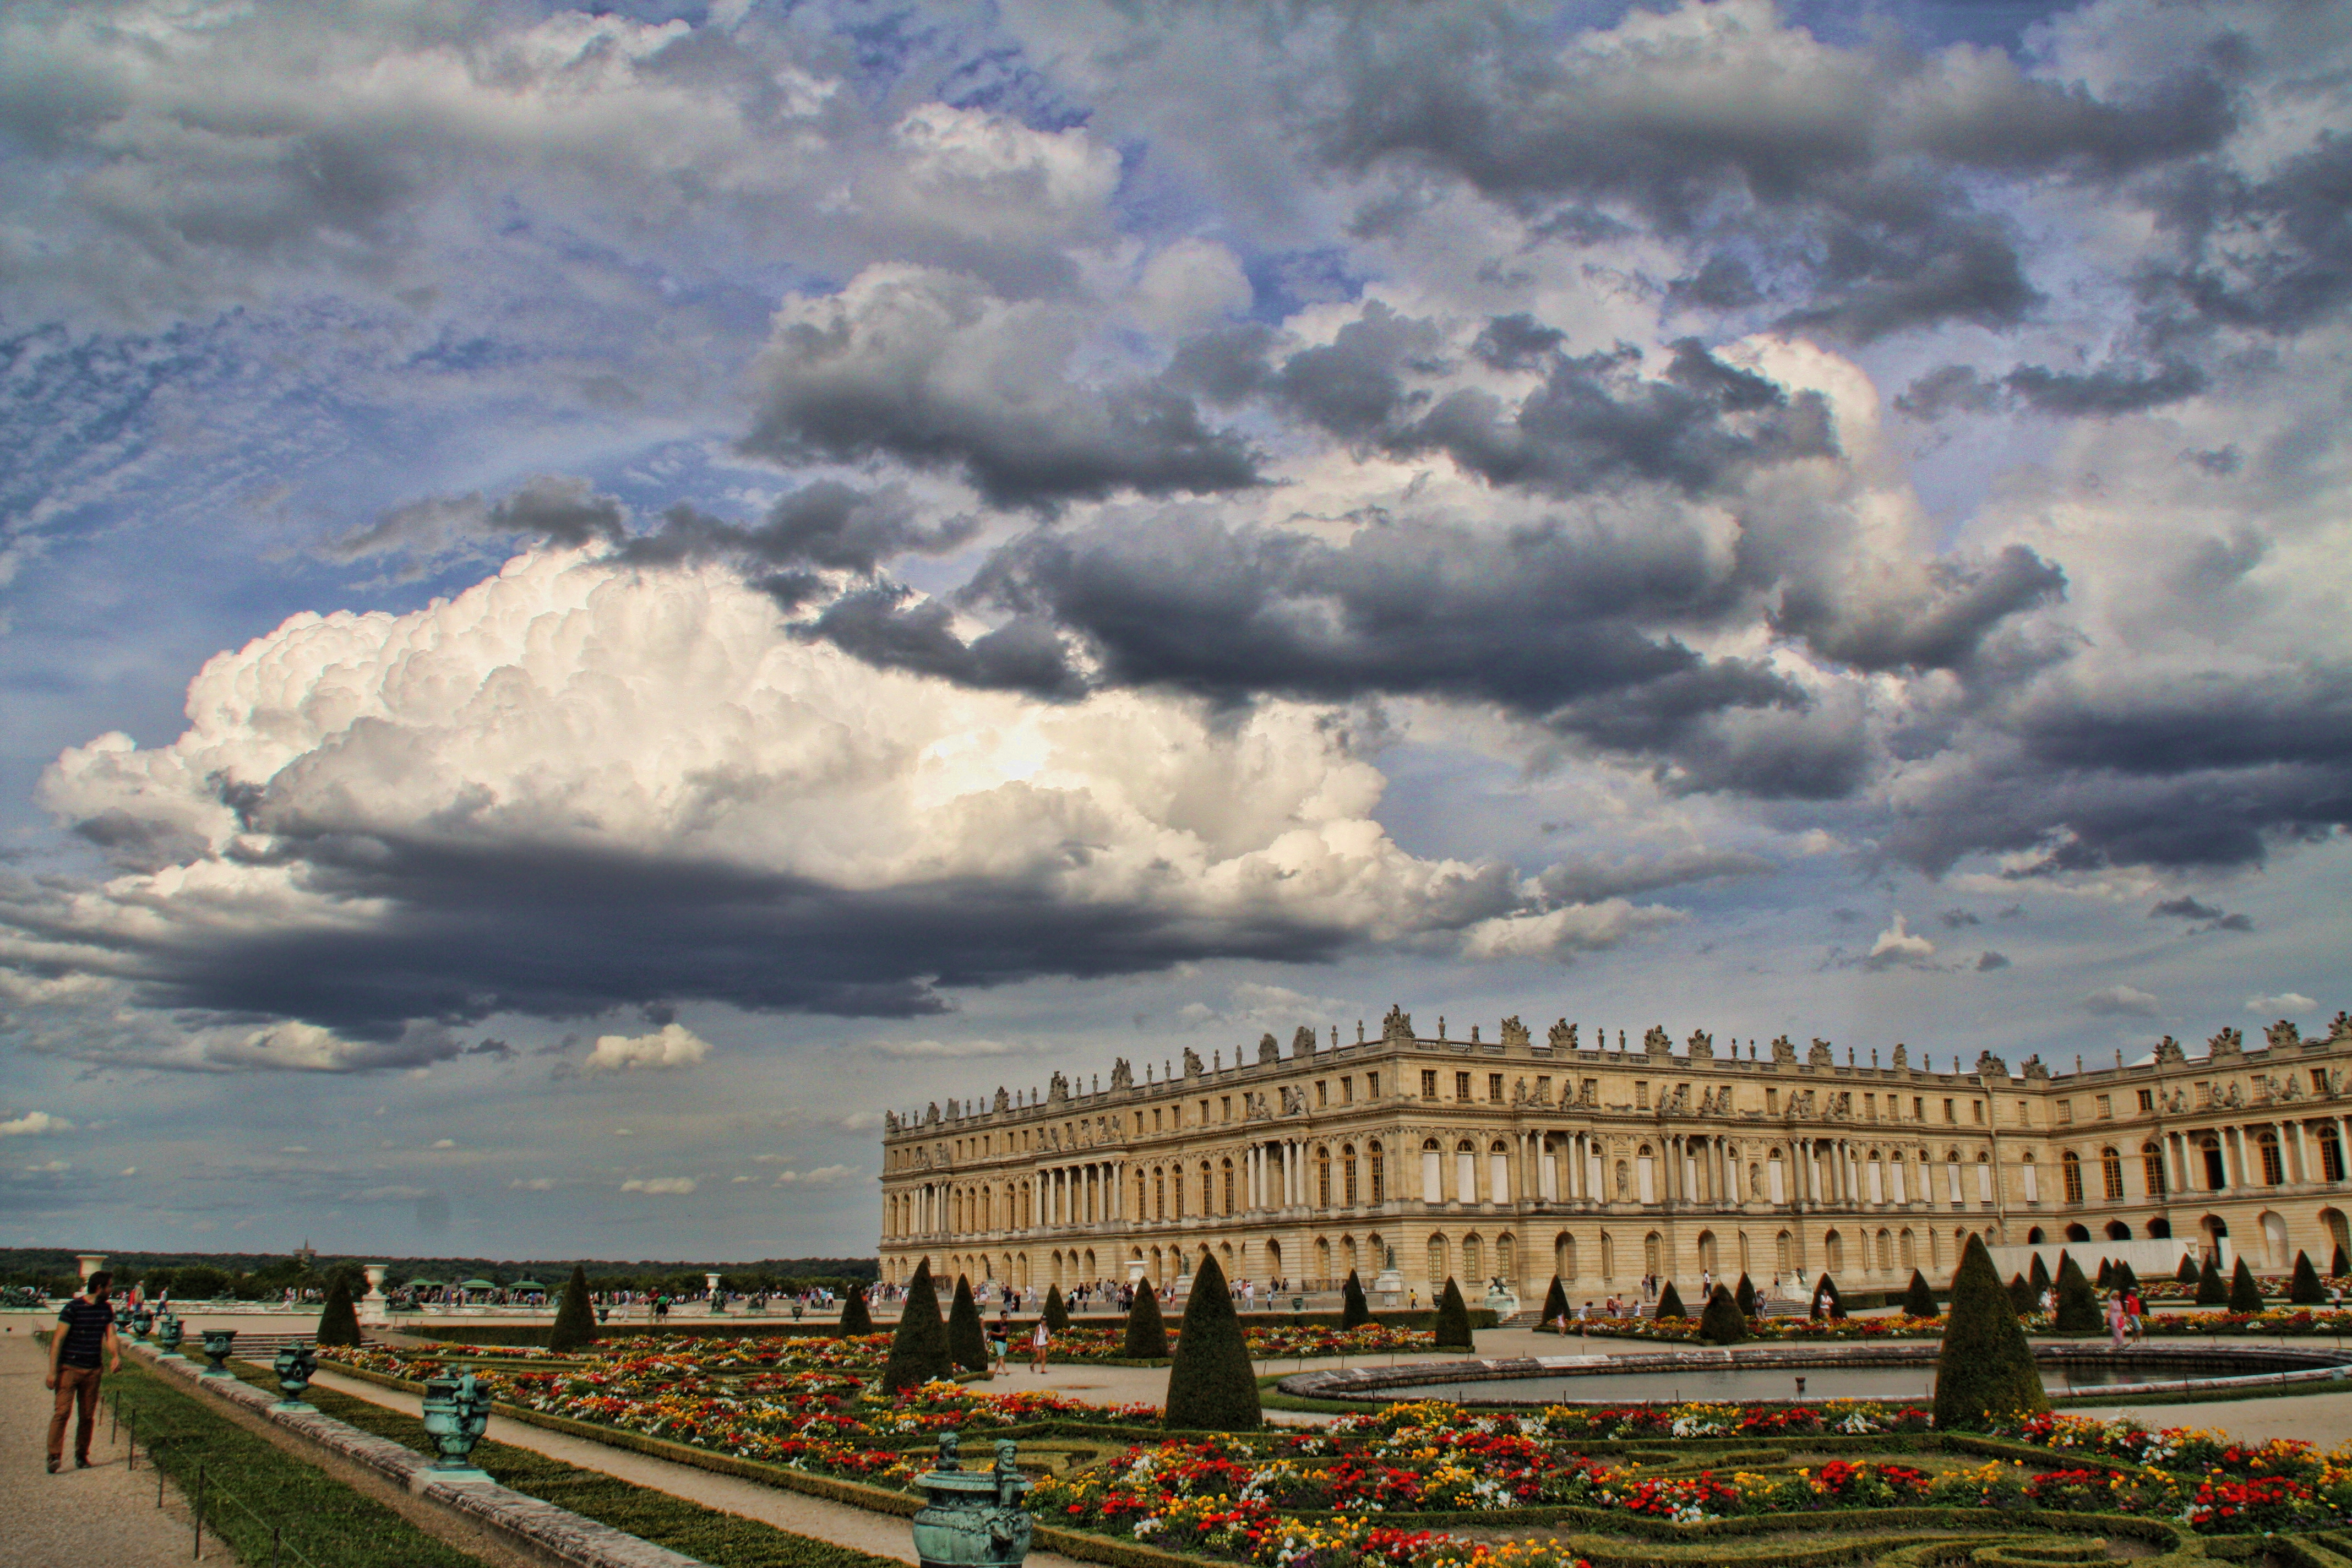 man made, palace of versailles, garden, paris, palaces